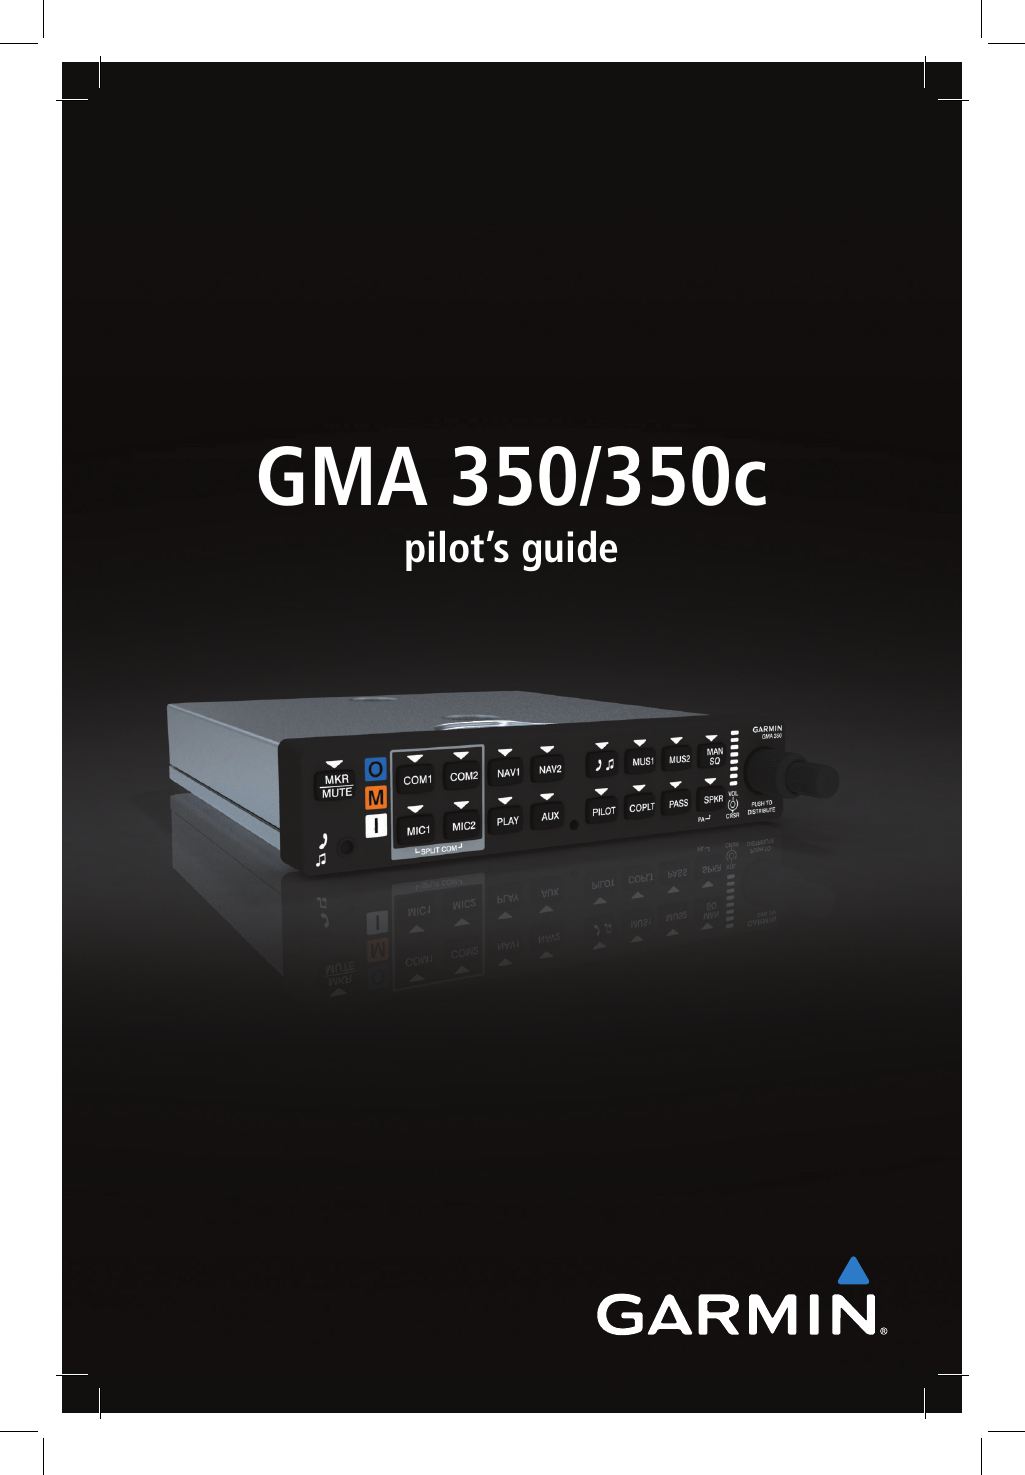 GMA 350/350c pilot’s guide